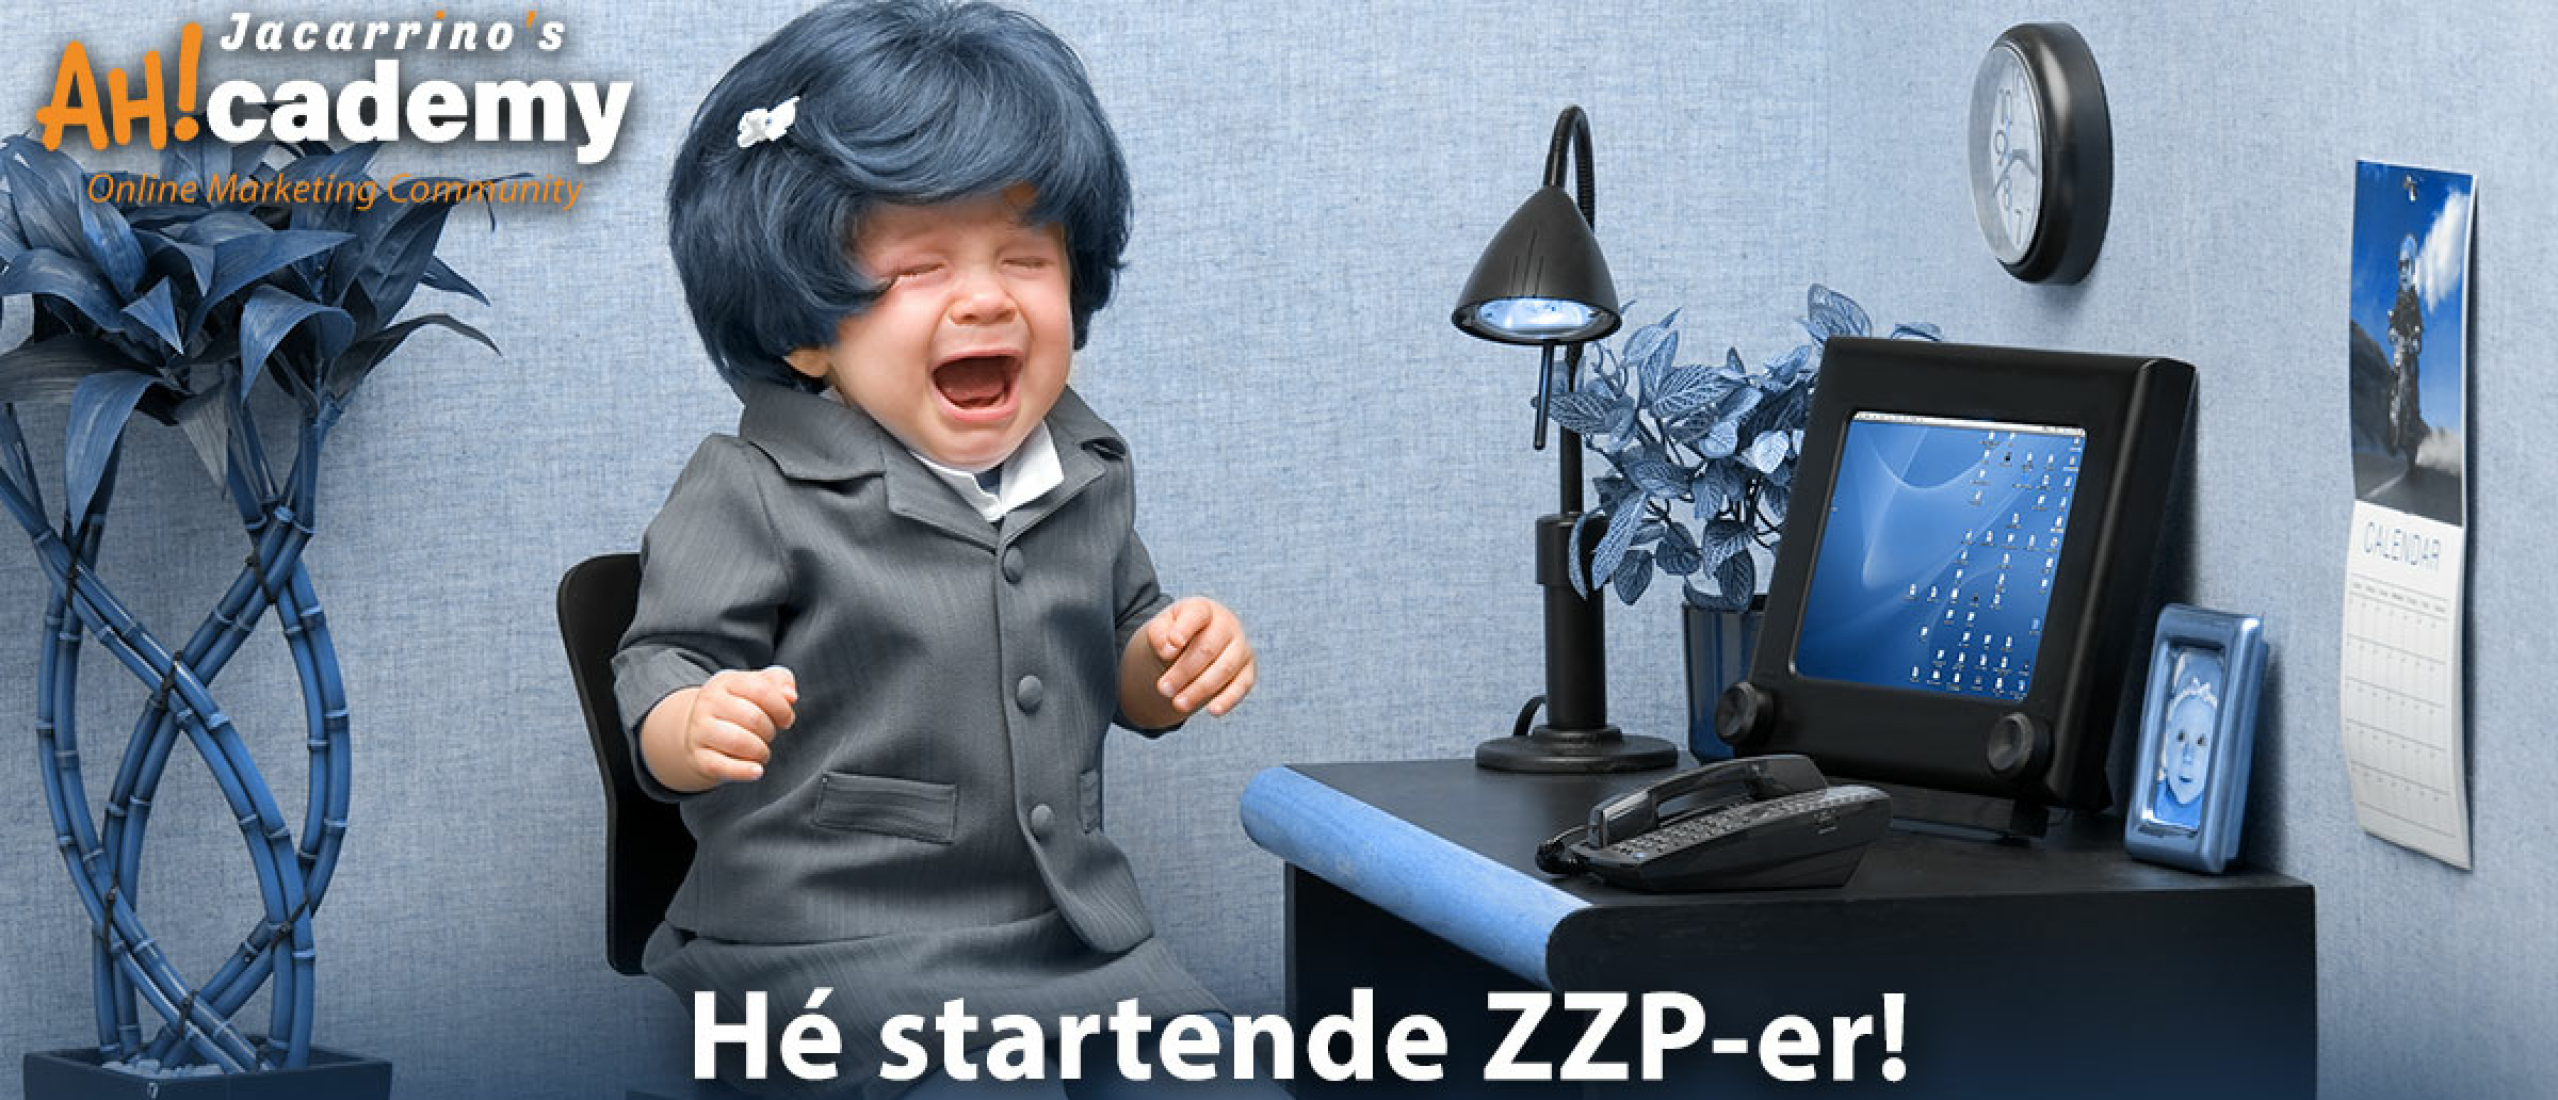 Hé startende ZZP-er! Wacht nog even met je logo en website!